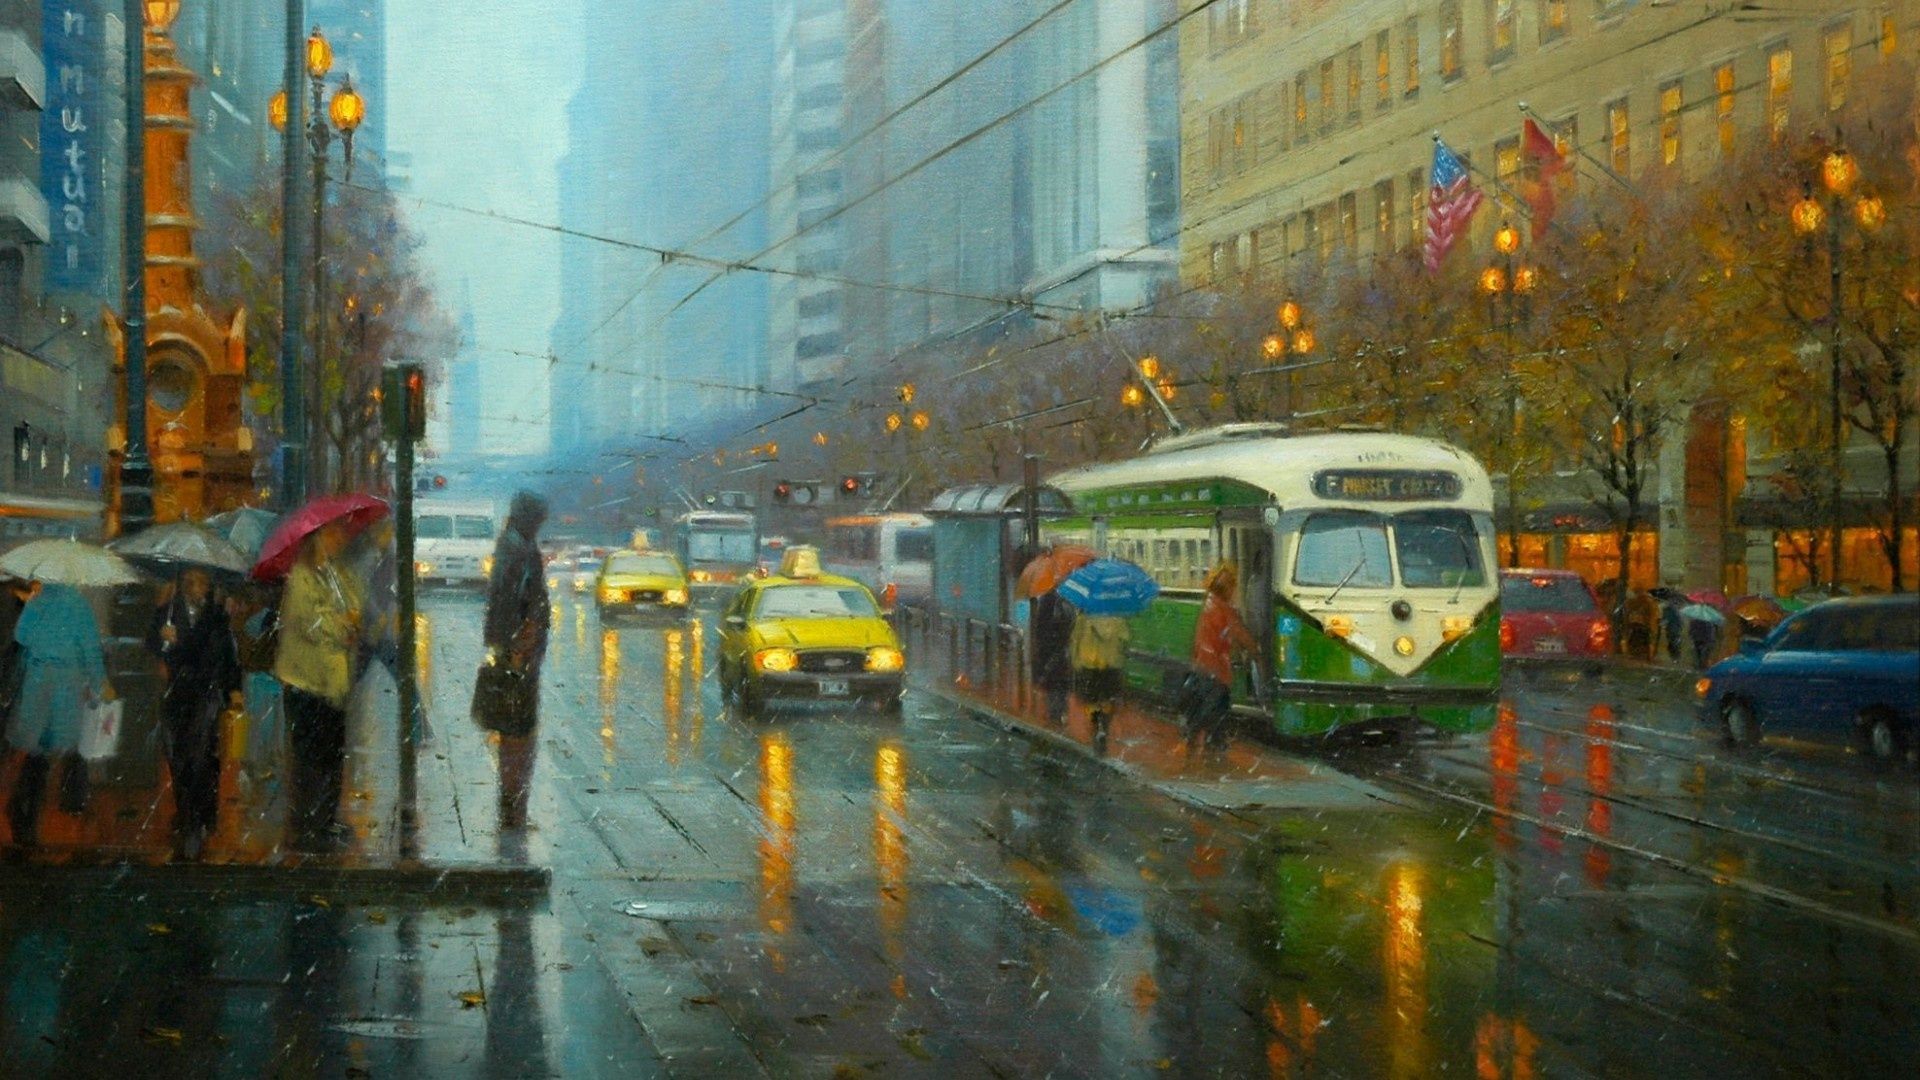 نقاشی جالب توجه باران رمانتیک در شهر شلوغ و پرتردد